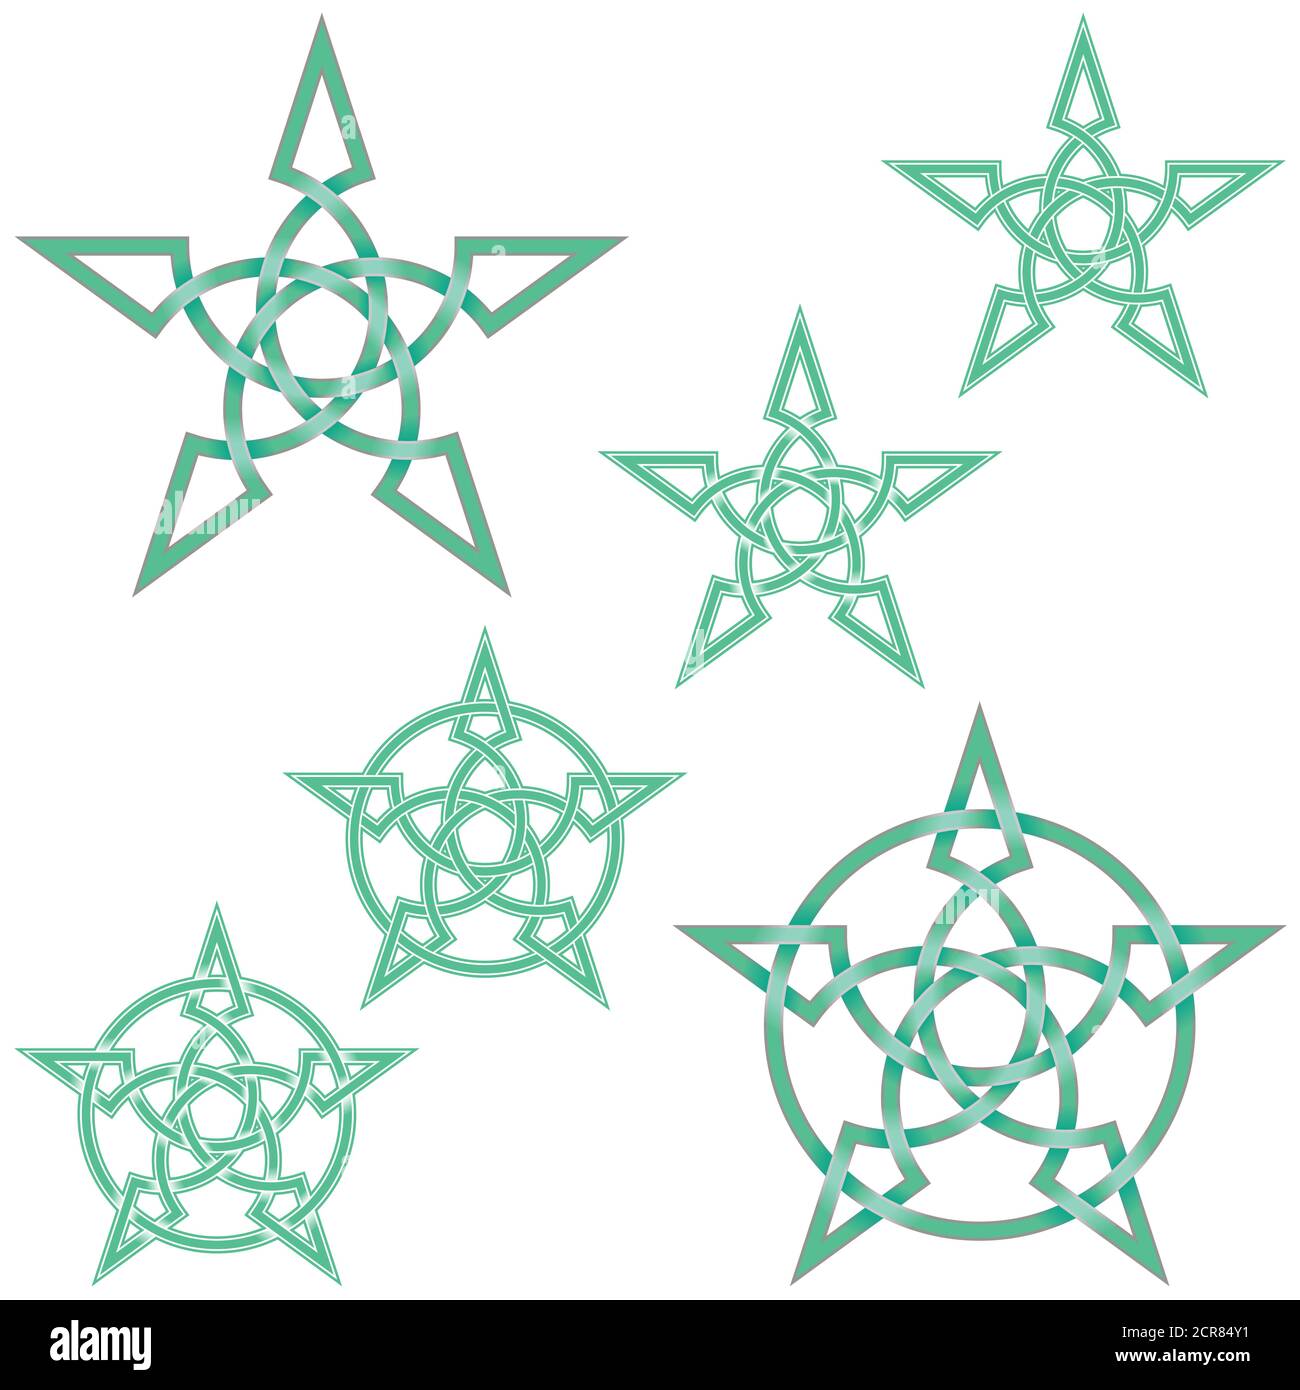 Illustration vectorielle d'une étoile entrelacée de style celtique entourée d'un cercle, facile à modifier et à changer de couleur, le tout sur fond blanc. Illustration de Vecteur